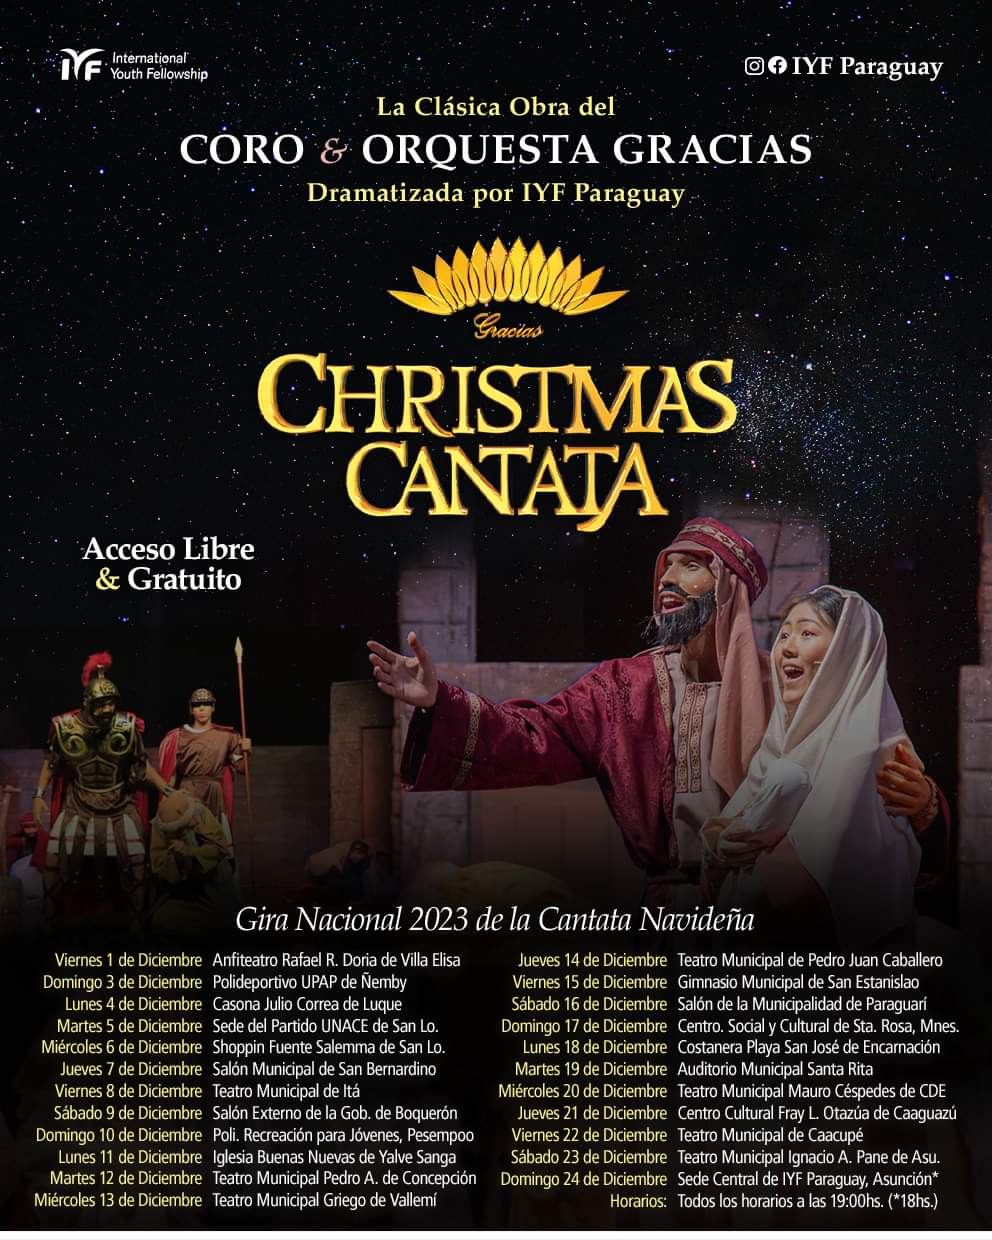 Fundación Internacional de Jóvenes organiza cantata navideña en el salón auditorio municipal